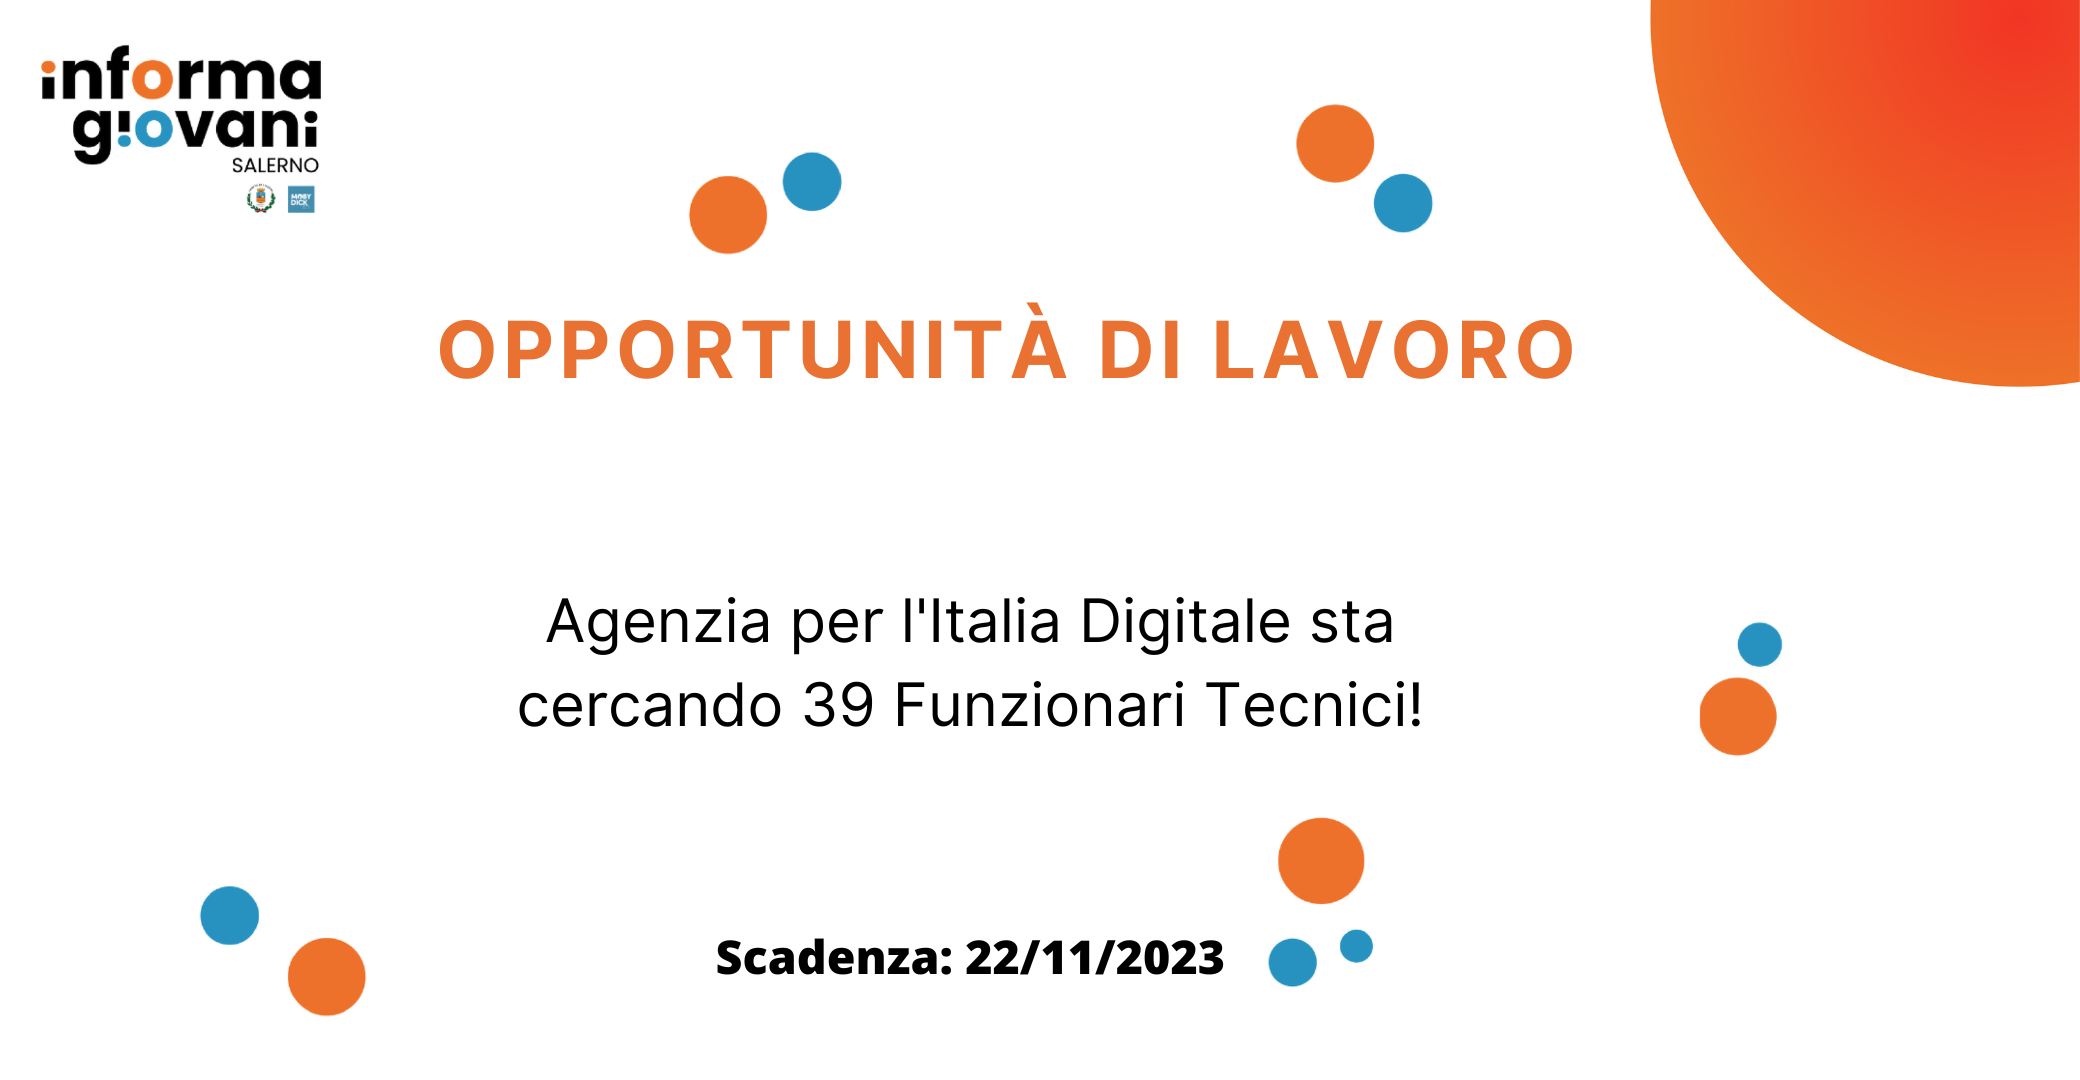 🌟 Opportunità di Lavoro: Agenzia per l’Italia Digitale cerca 39 Funzionari Tecnici!